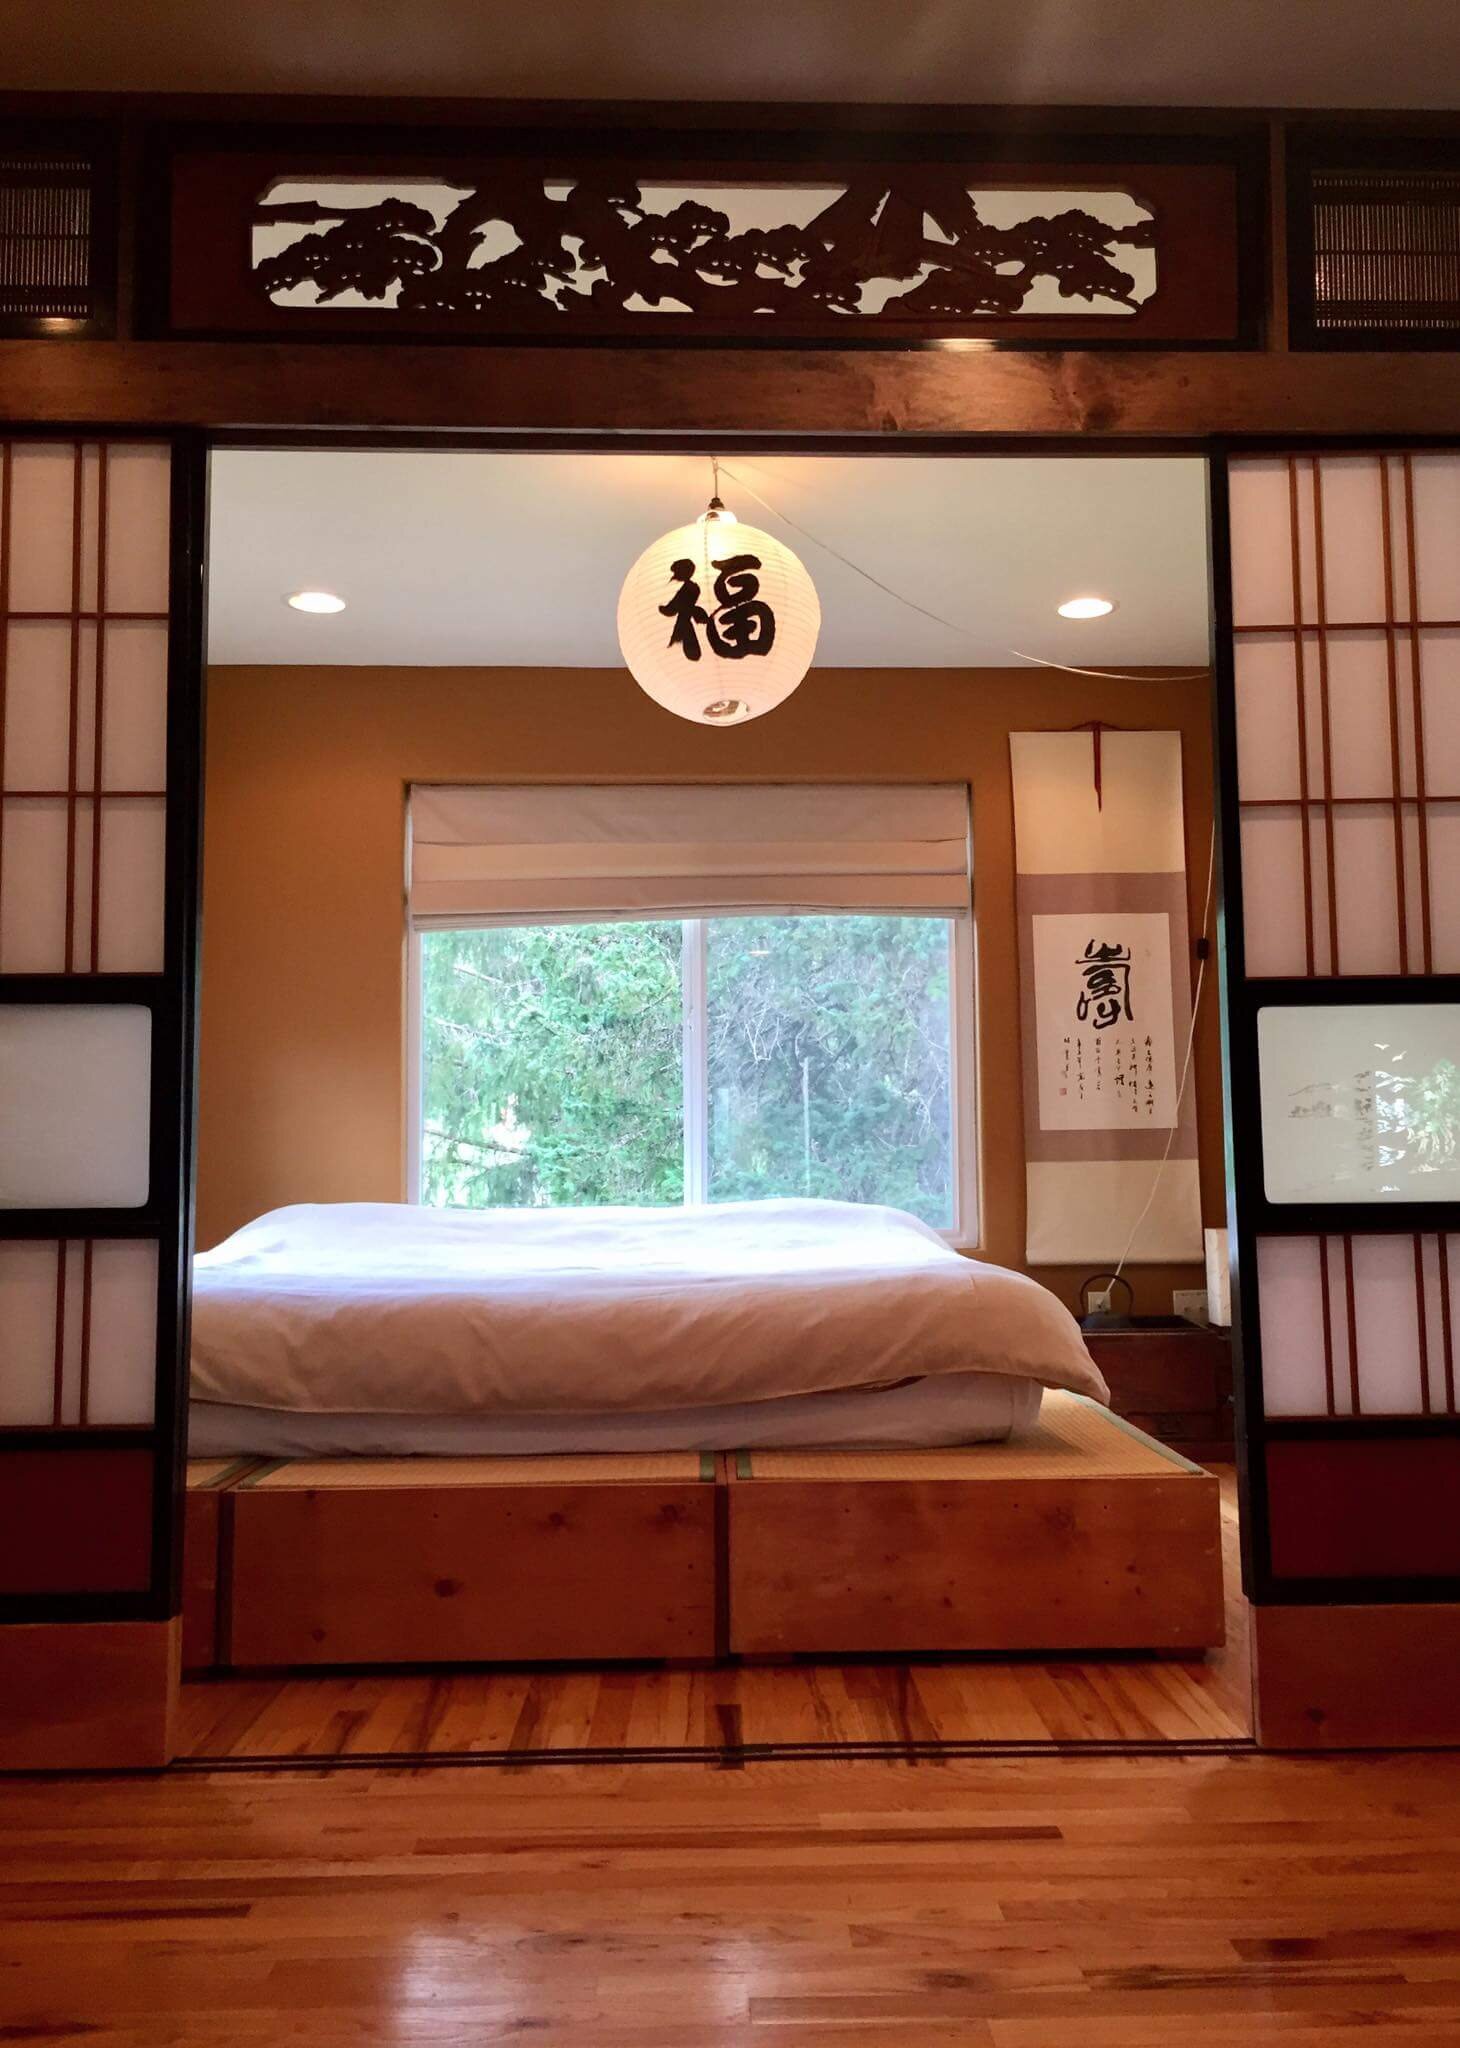  A bed framed in oriental motif 